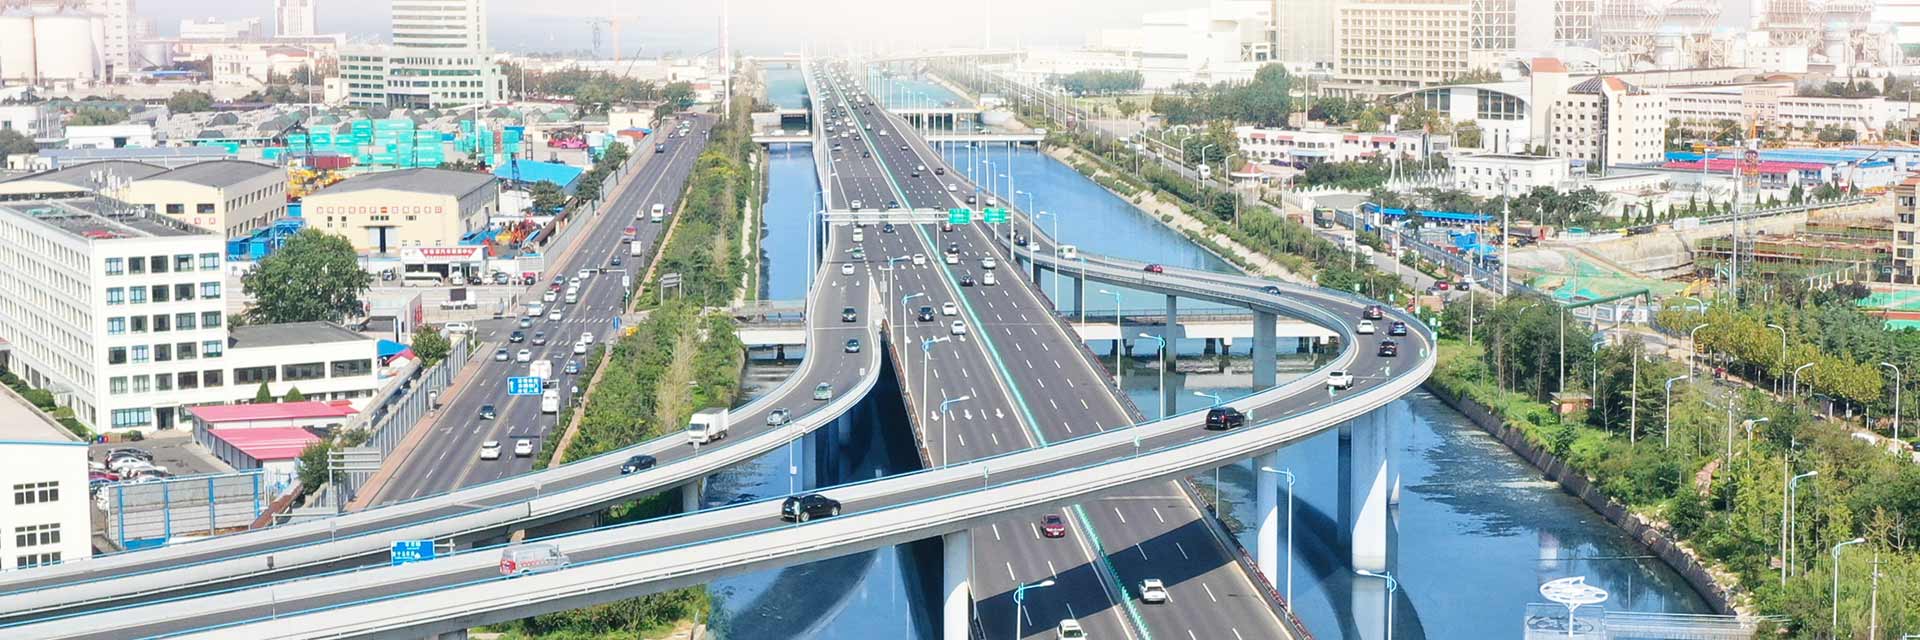 杭州支路-鞍山路快速路工程